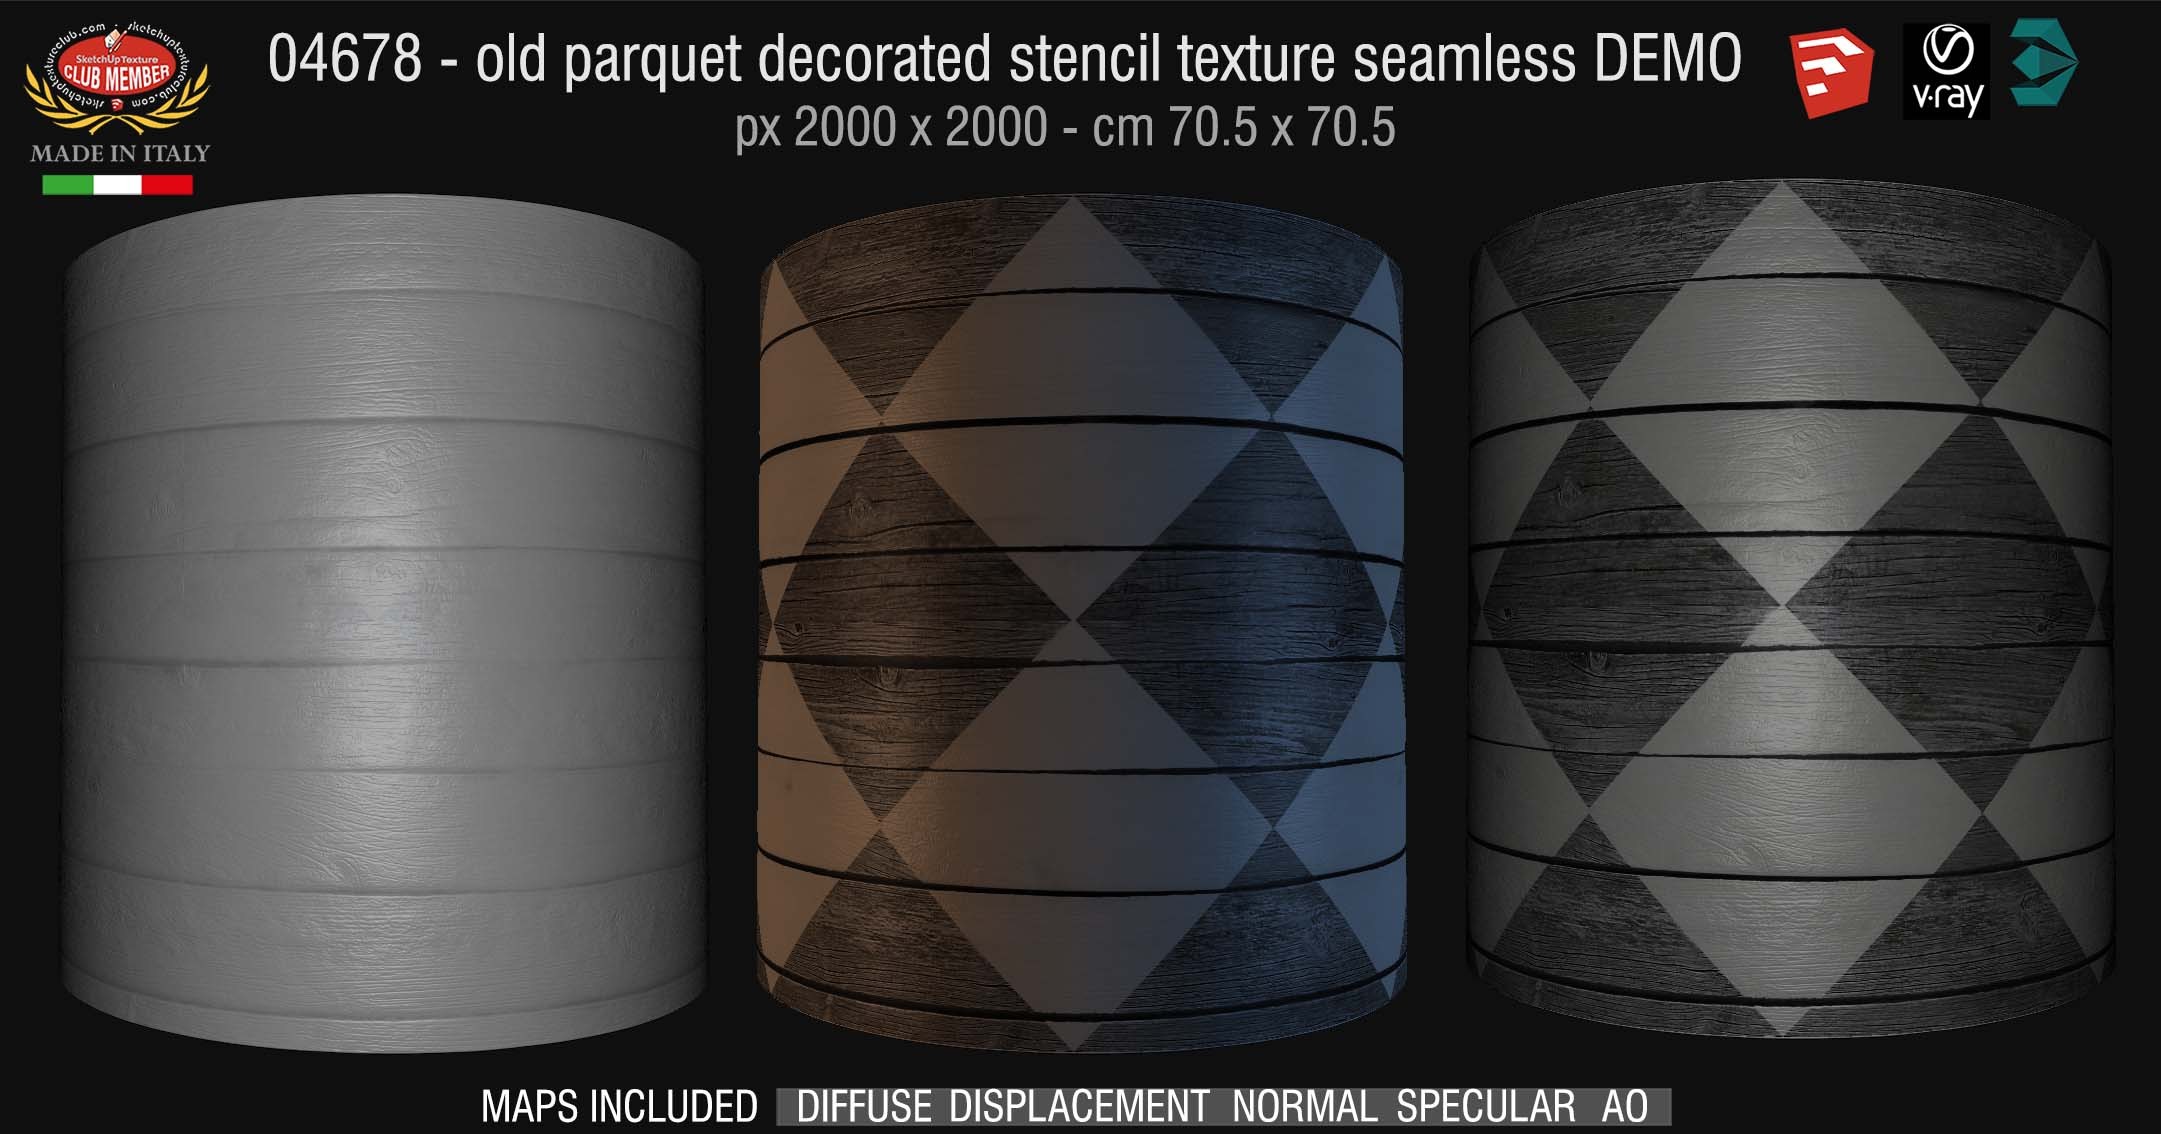 04678 HR Parquet decorated stencil texture seamless + maps DEMO